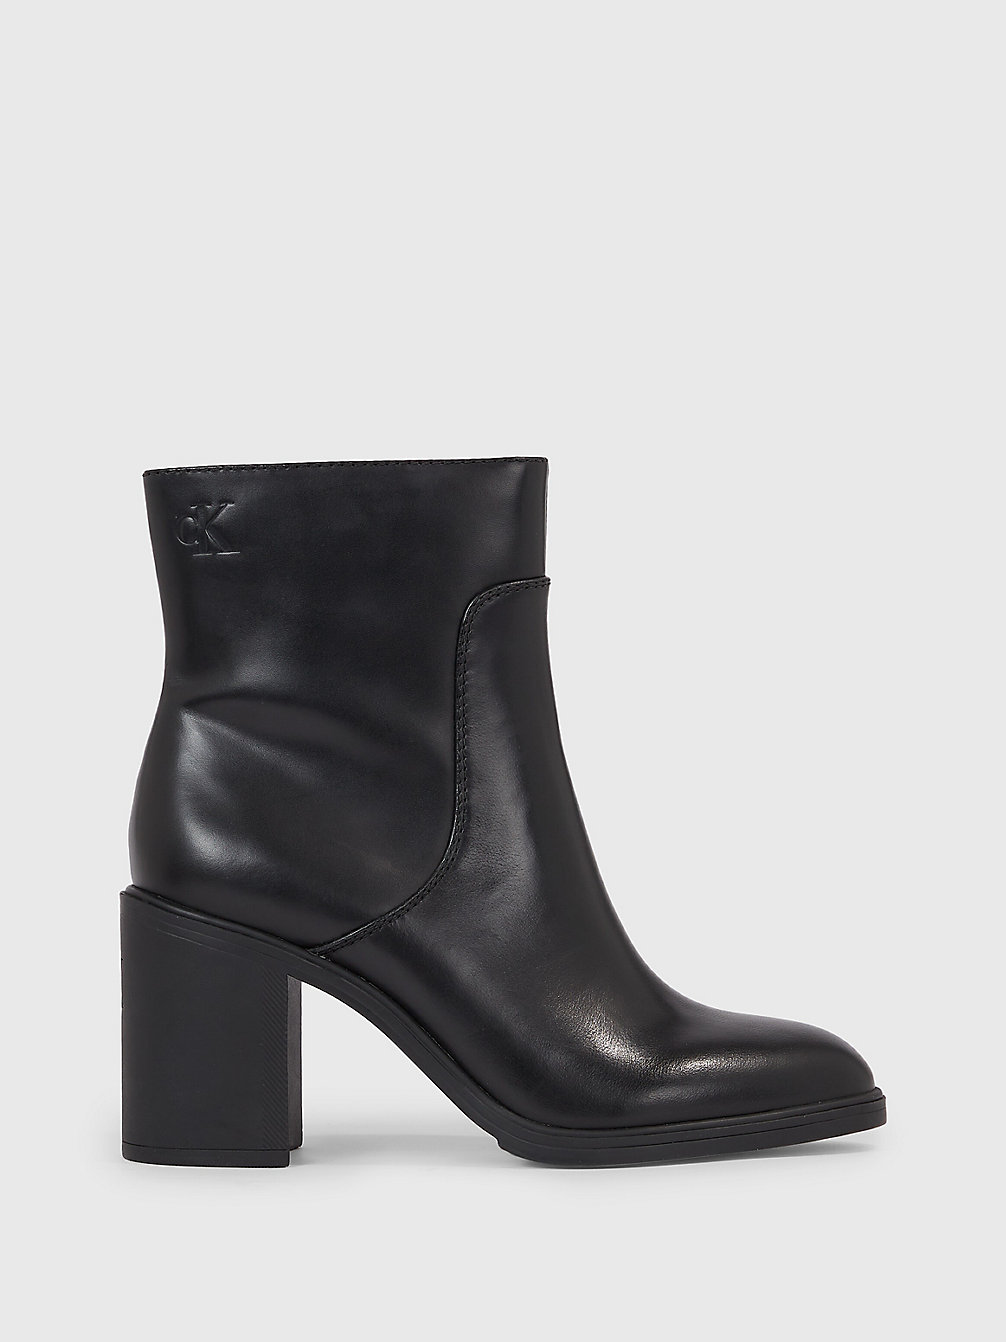 TRIPLE BLACK Ankle-Boots Mit Absatz Aus Leder undefined Damen Calvin Klein